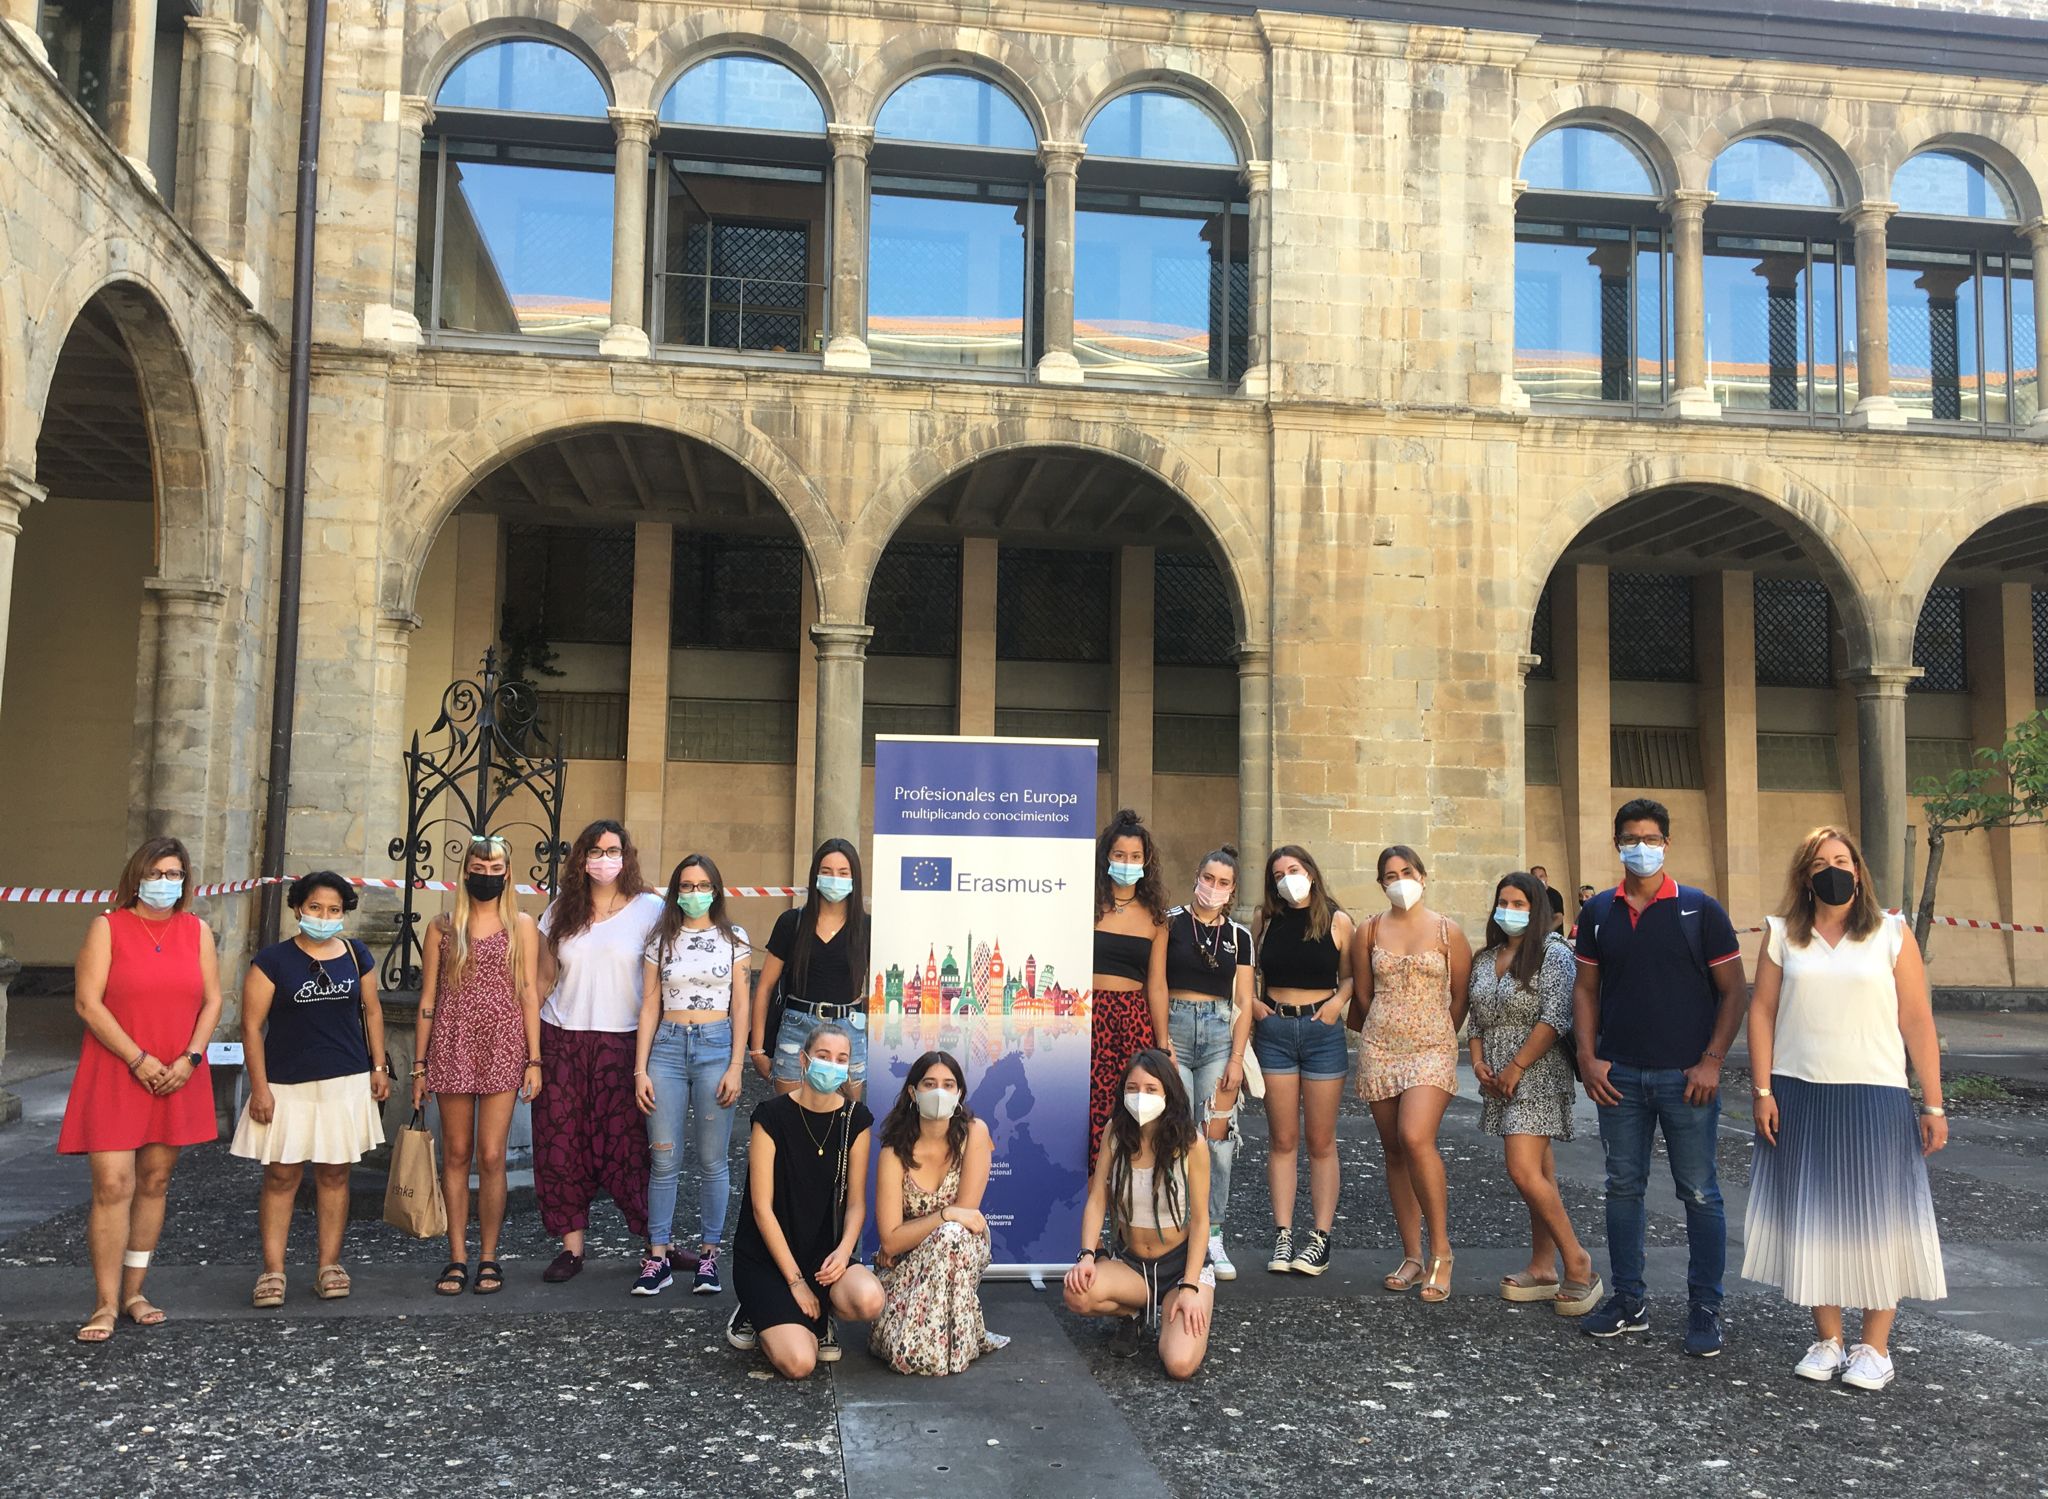 Quince estudiantes navarros de FP parten hacia Italia, Malta, Francia y Alemania para desarrollar prácticas a sus estudios en empresas europeas